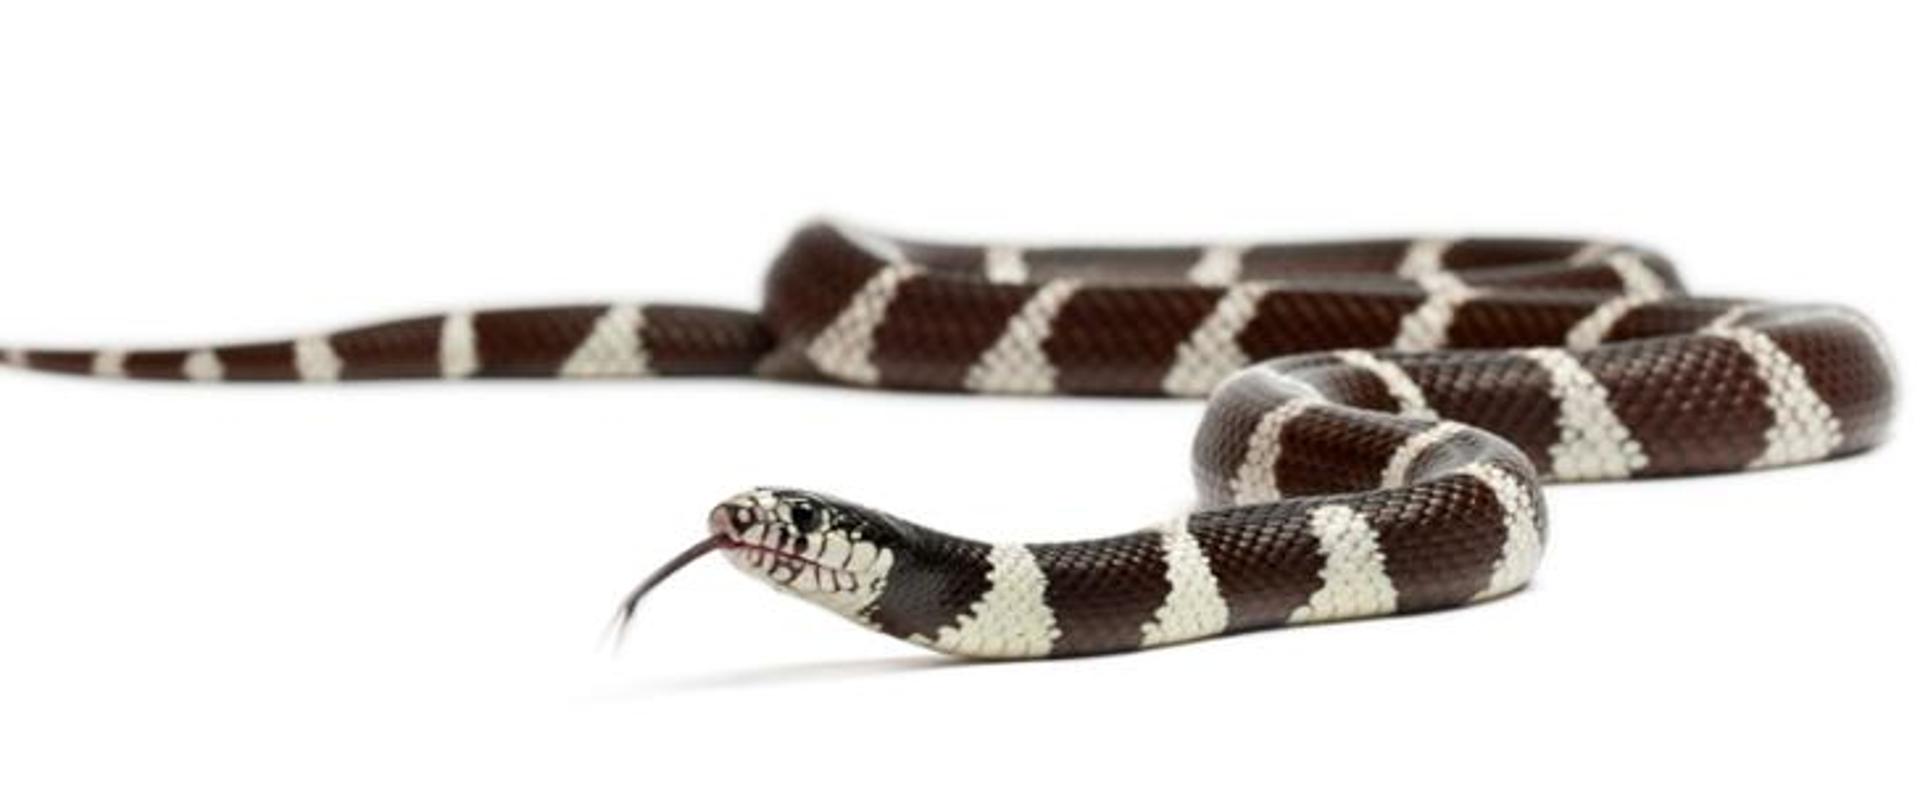 Wąż Lancetogłów królewski (Lampropeltis getula) kolorem podstawowym jest czarny. Na jego tle znajdują się poprzeczne pasy i prążki o barwie białej i żółtawej.